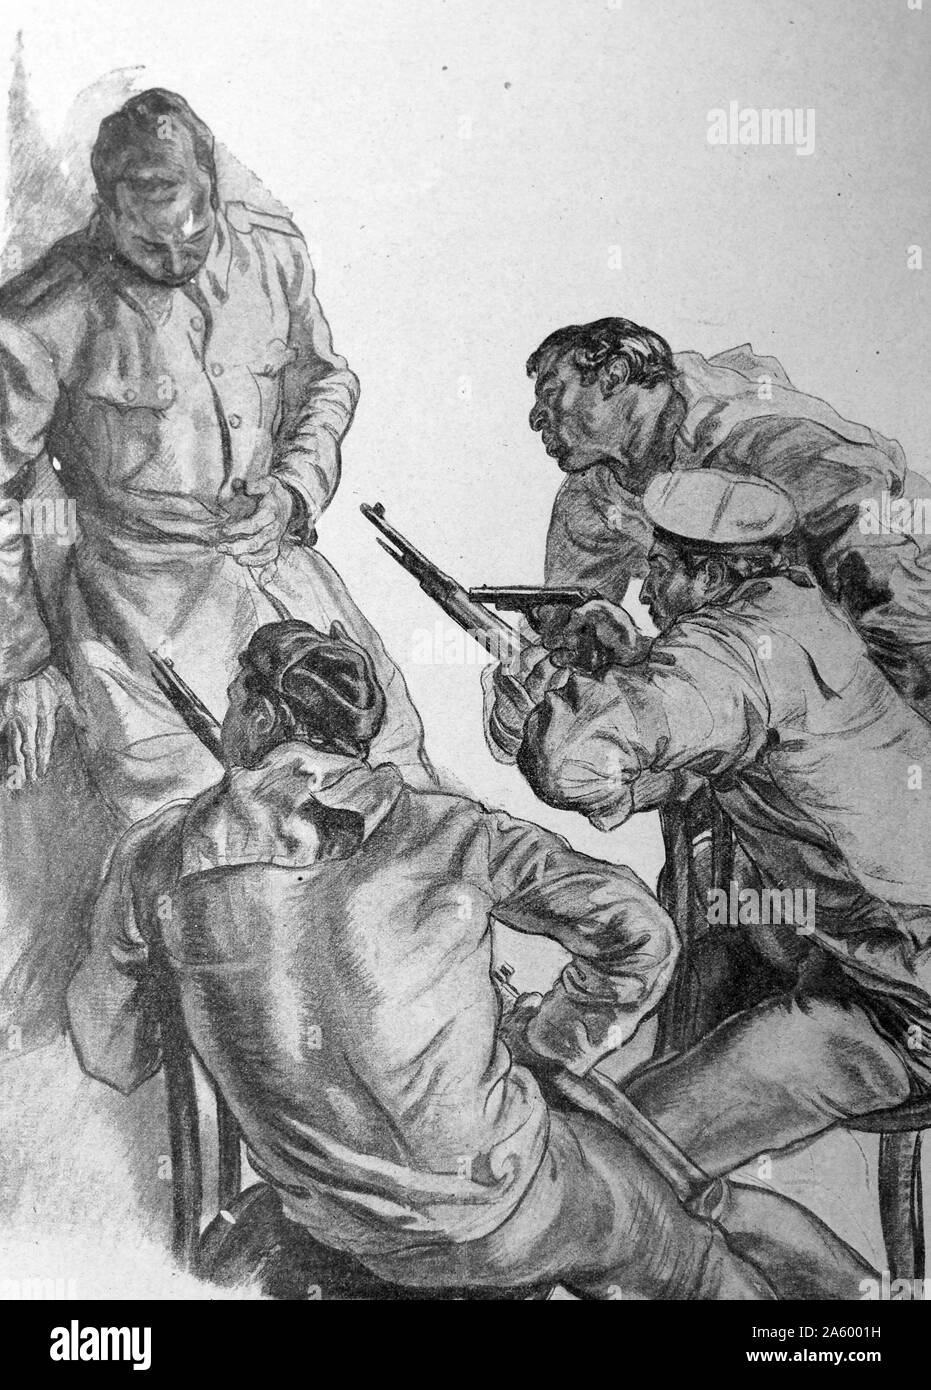 Propaganda-Illustration von Carlos Saenz De Tejada Darstellung eines Marineoffiziers, von republikanischen Meuterer, während des spanischen Bürgerkrieges erschossen. Datiert 1938 Stockfoto